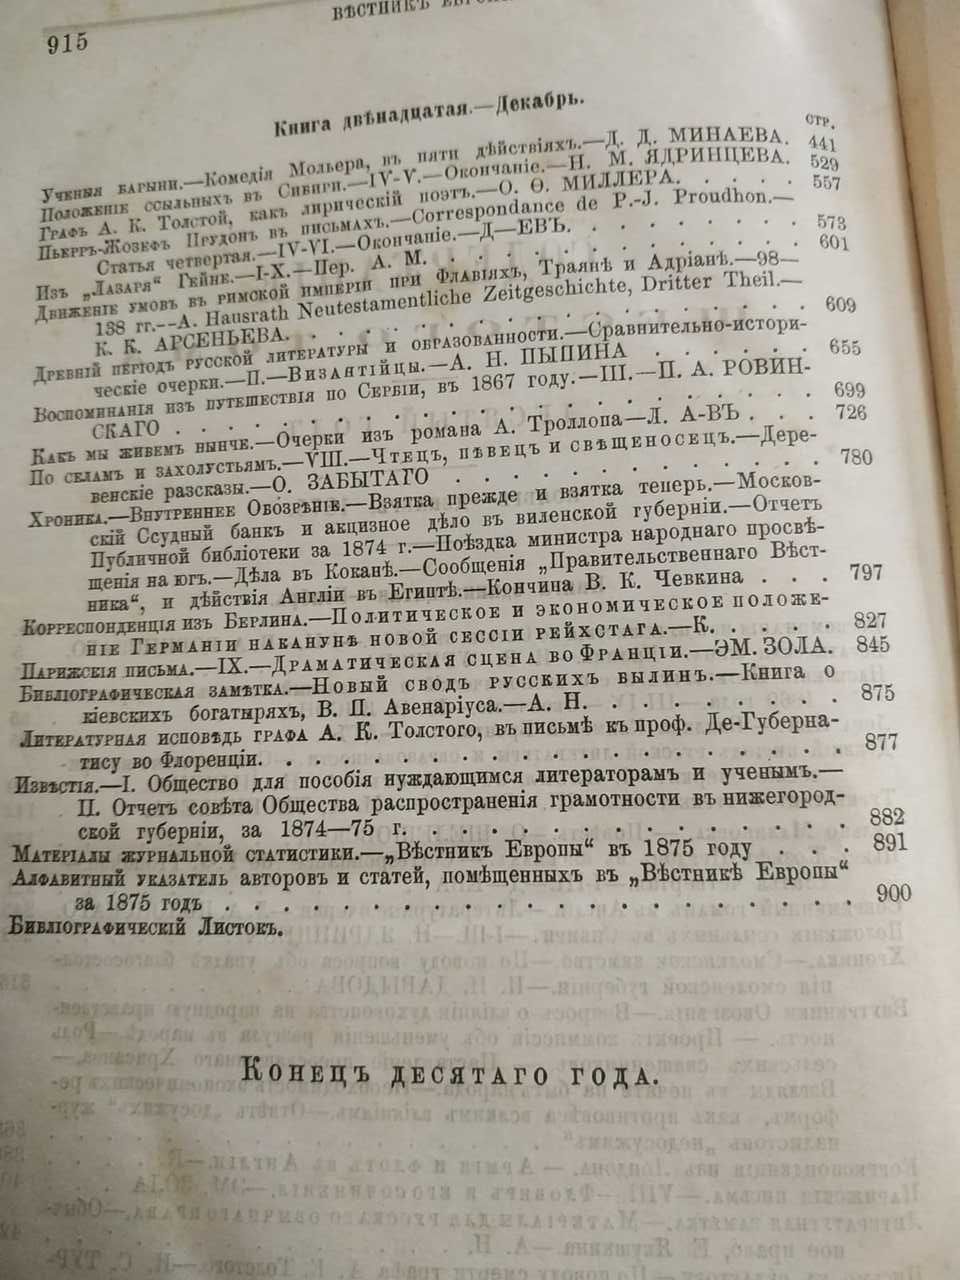 Историко-политический журнал Вестник Европы  декабрь 1875 год